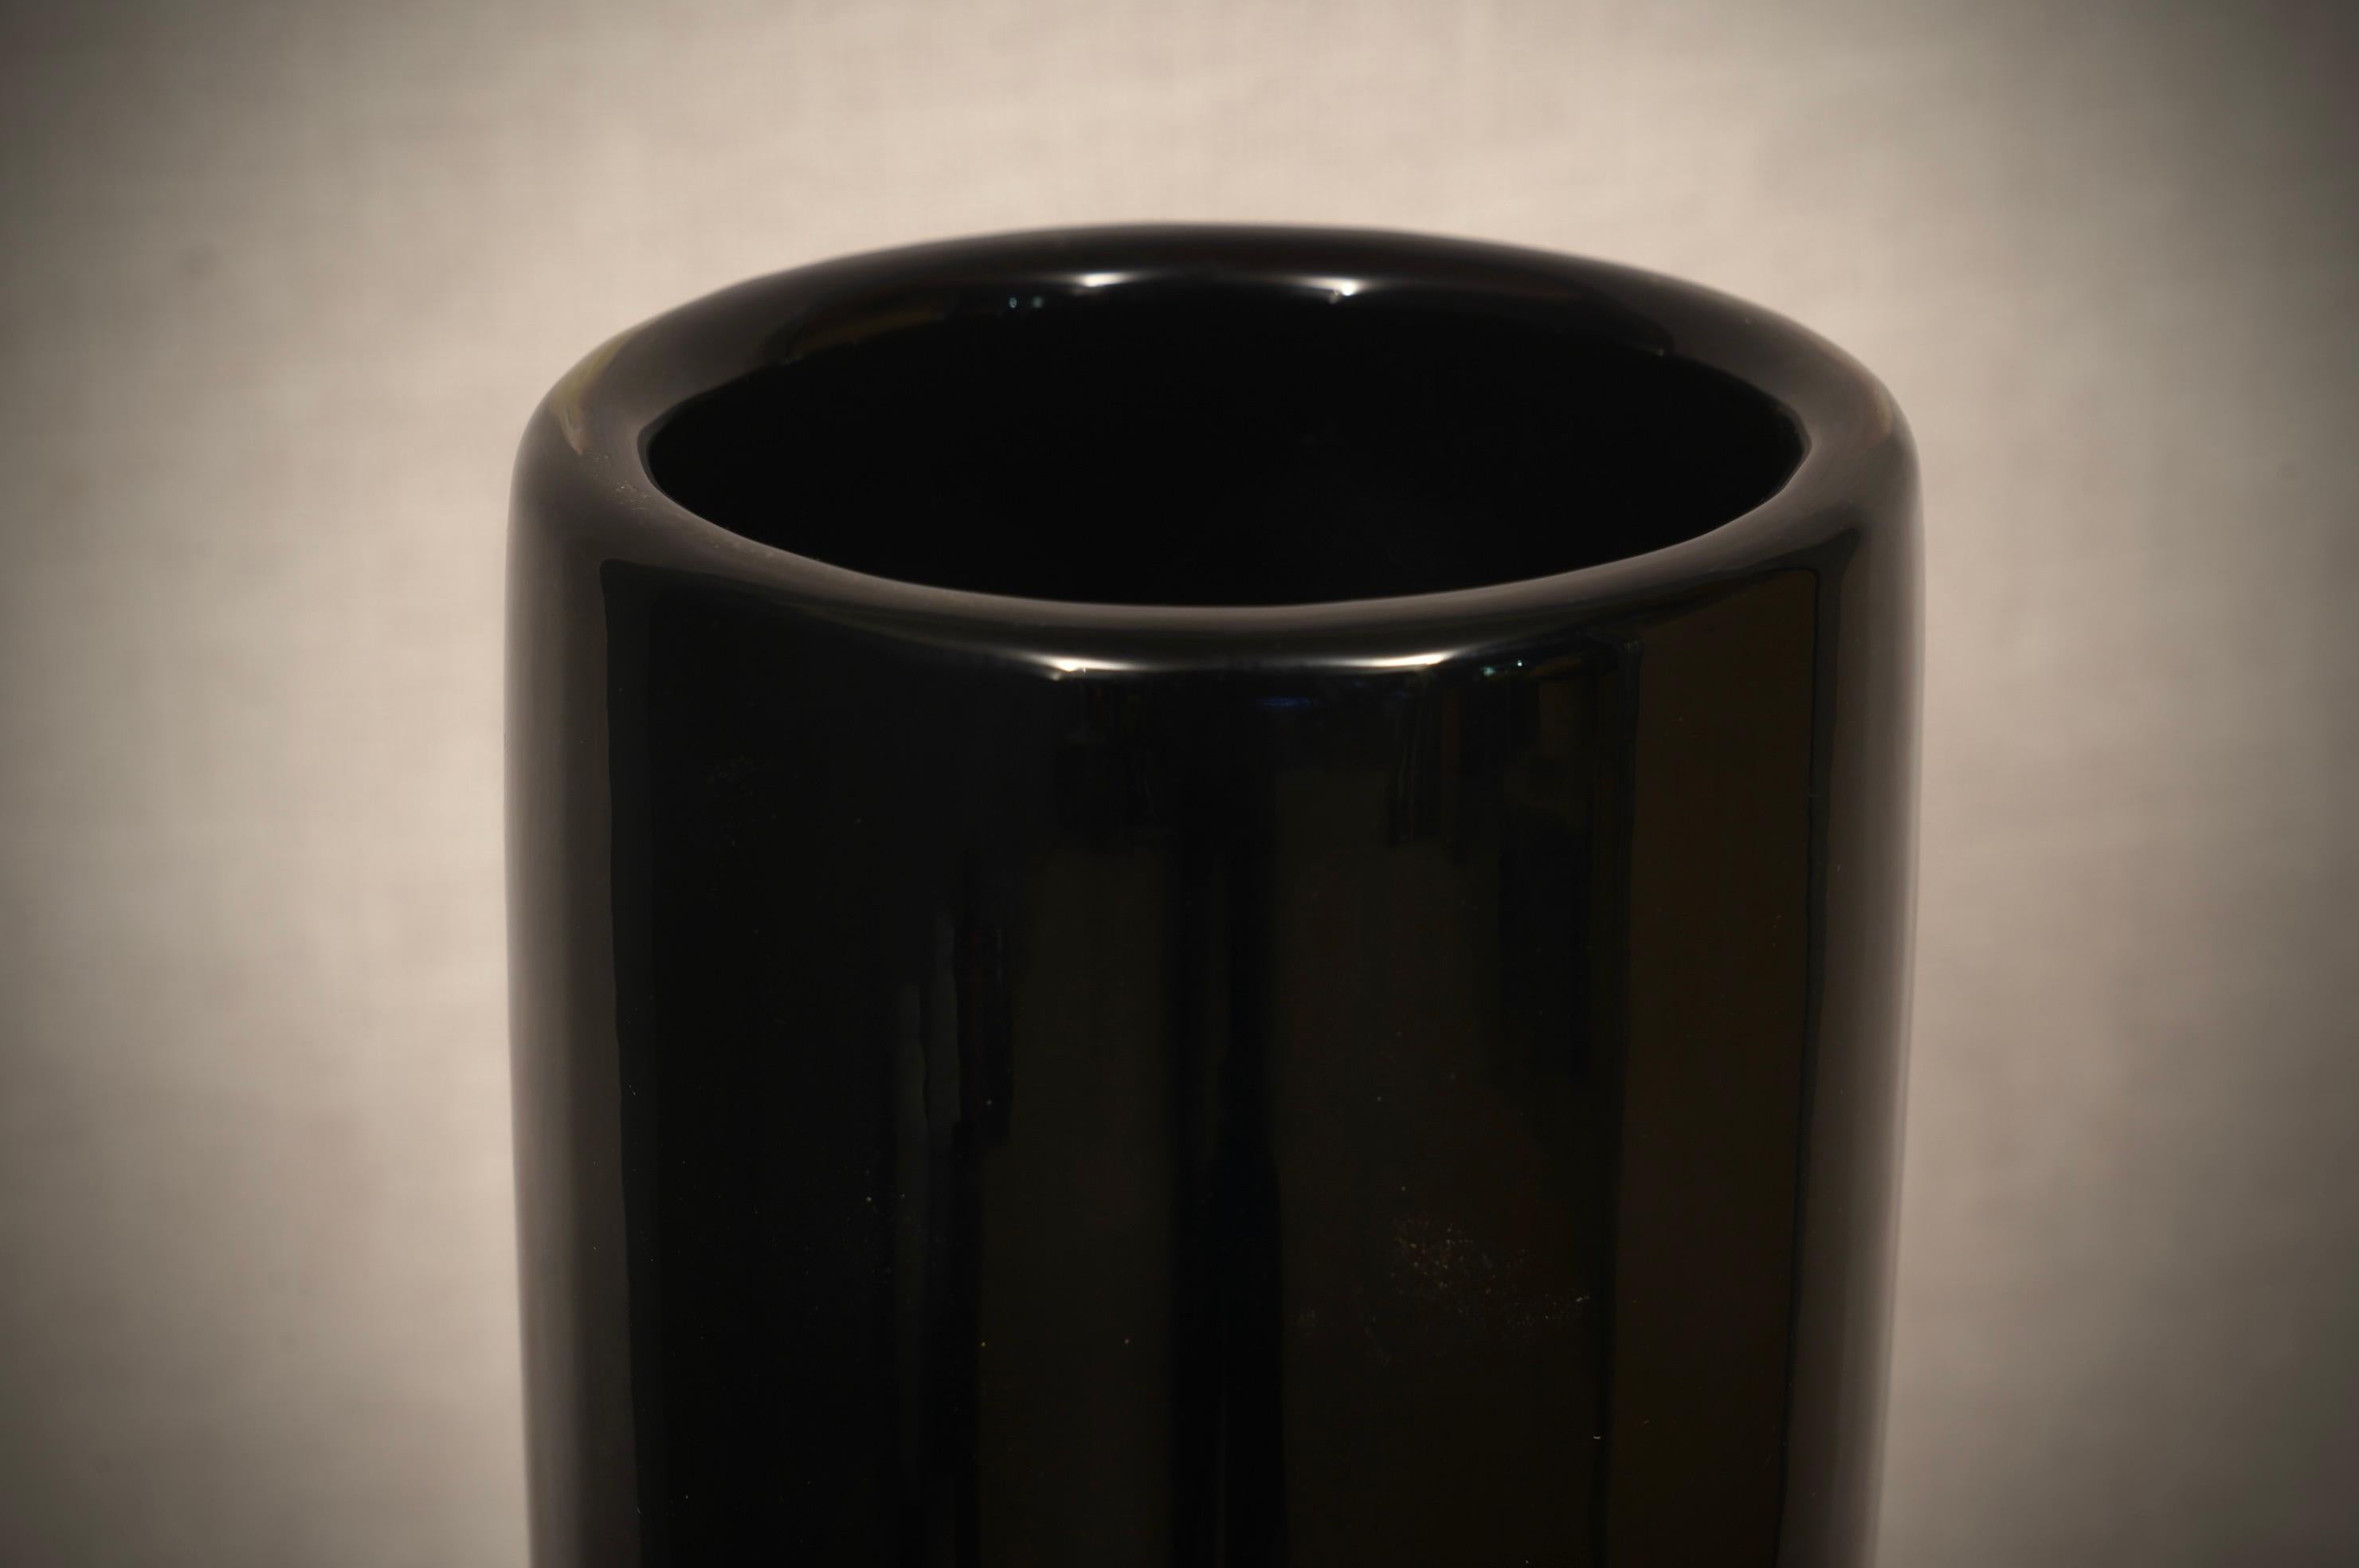 Vivarini Murano Art Glass Round Black Vase, 1990 For Sale 2